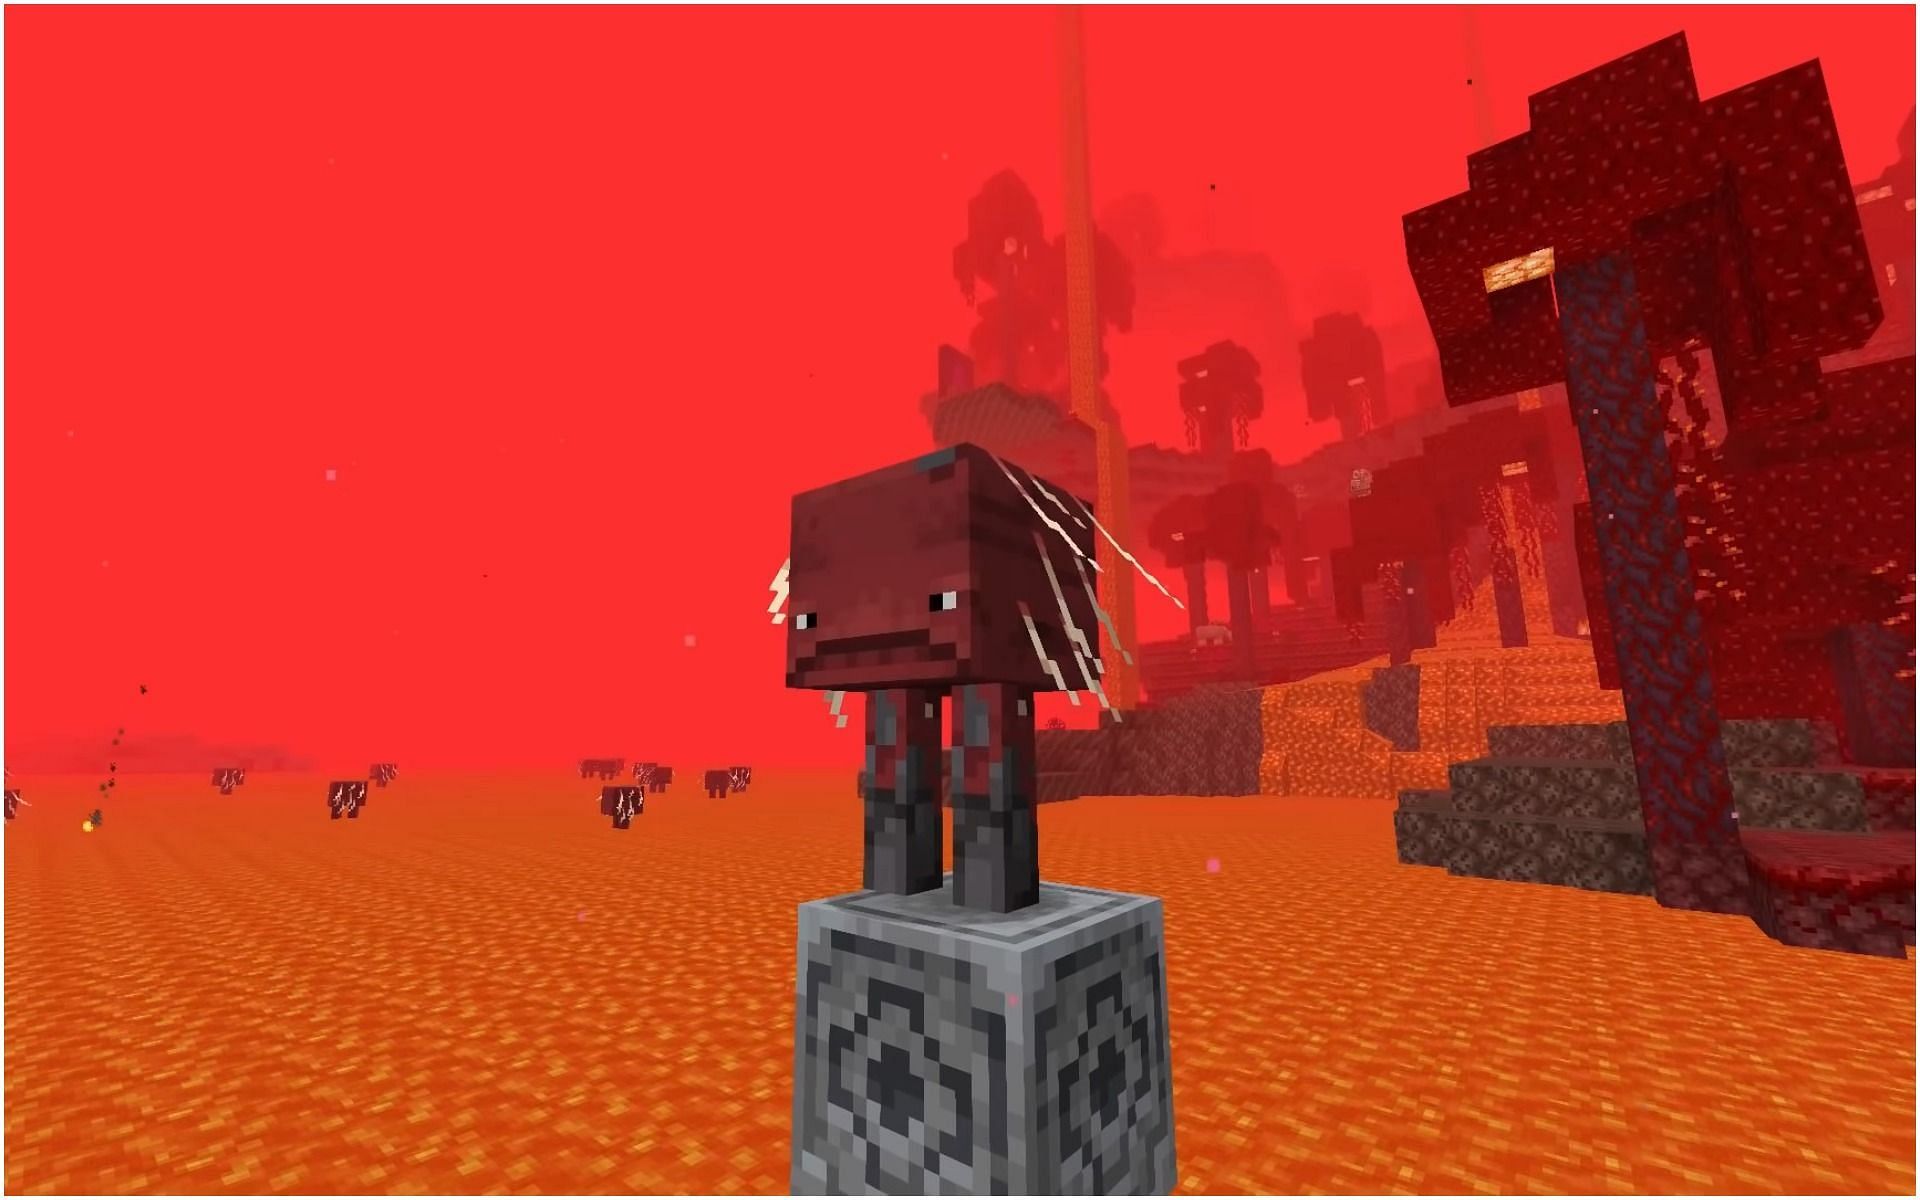 A strider in Minecraft (Image via Minecraft)